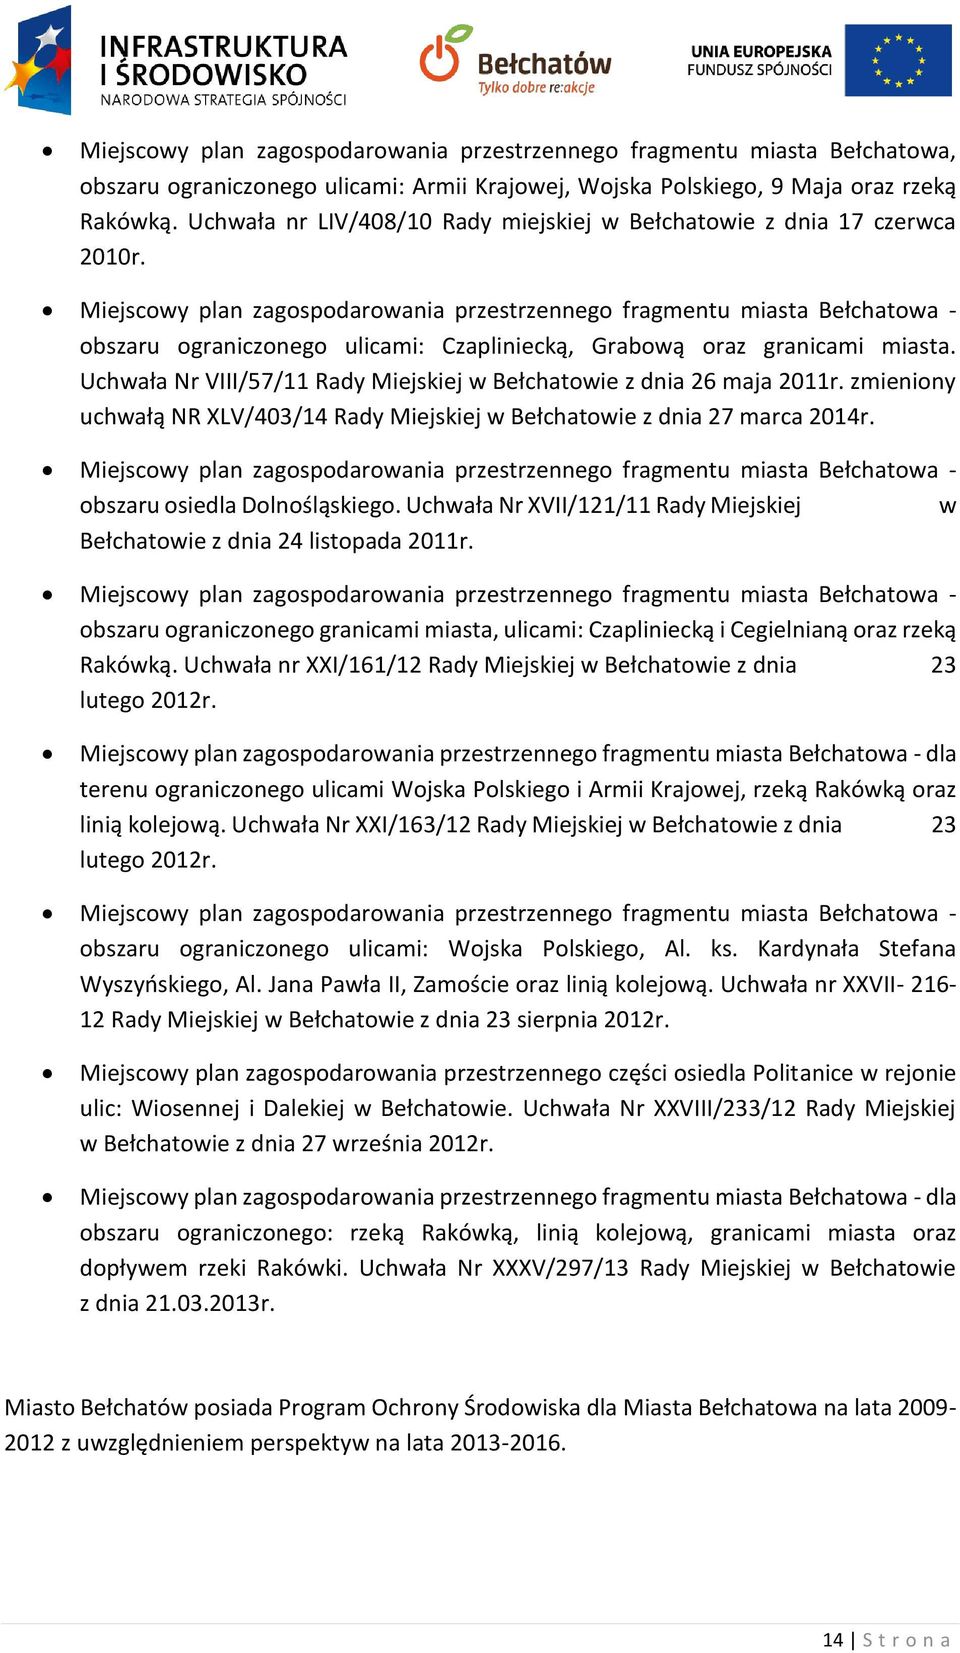 Miejscowy plan zagospodarowania przestrzennego fragmentu miasta Bełchatowa - obszaru ograniczonego ulicami: Czapliniecką, Grabową oraz granicami miasta.